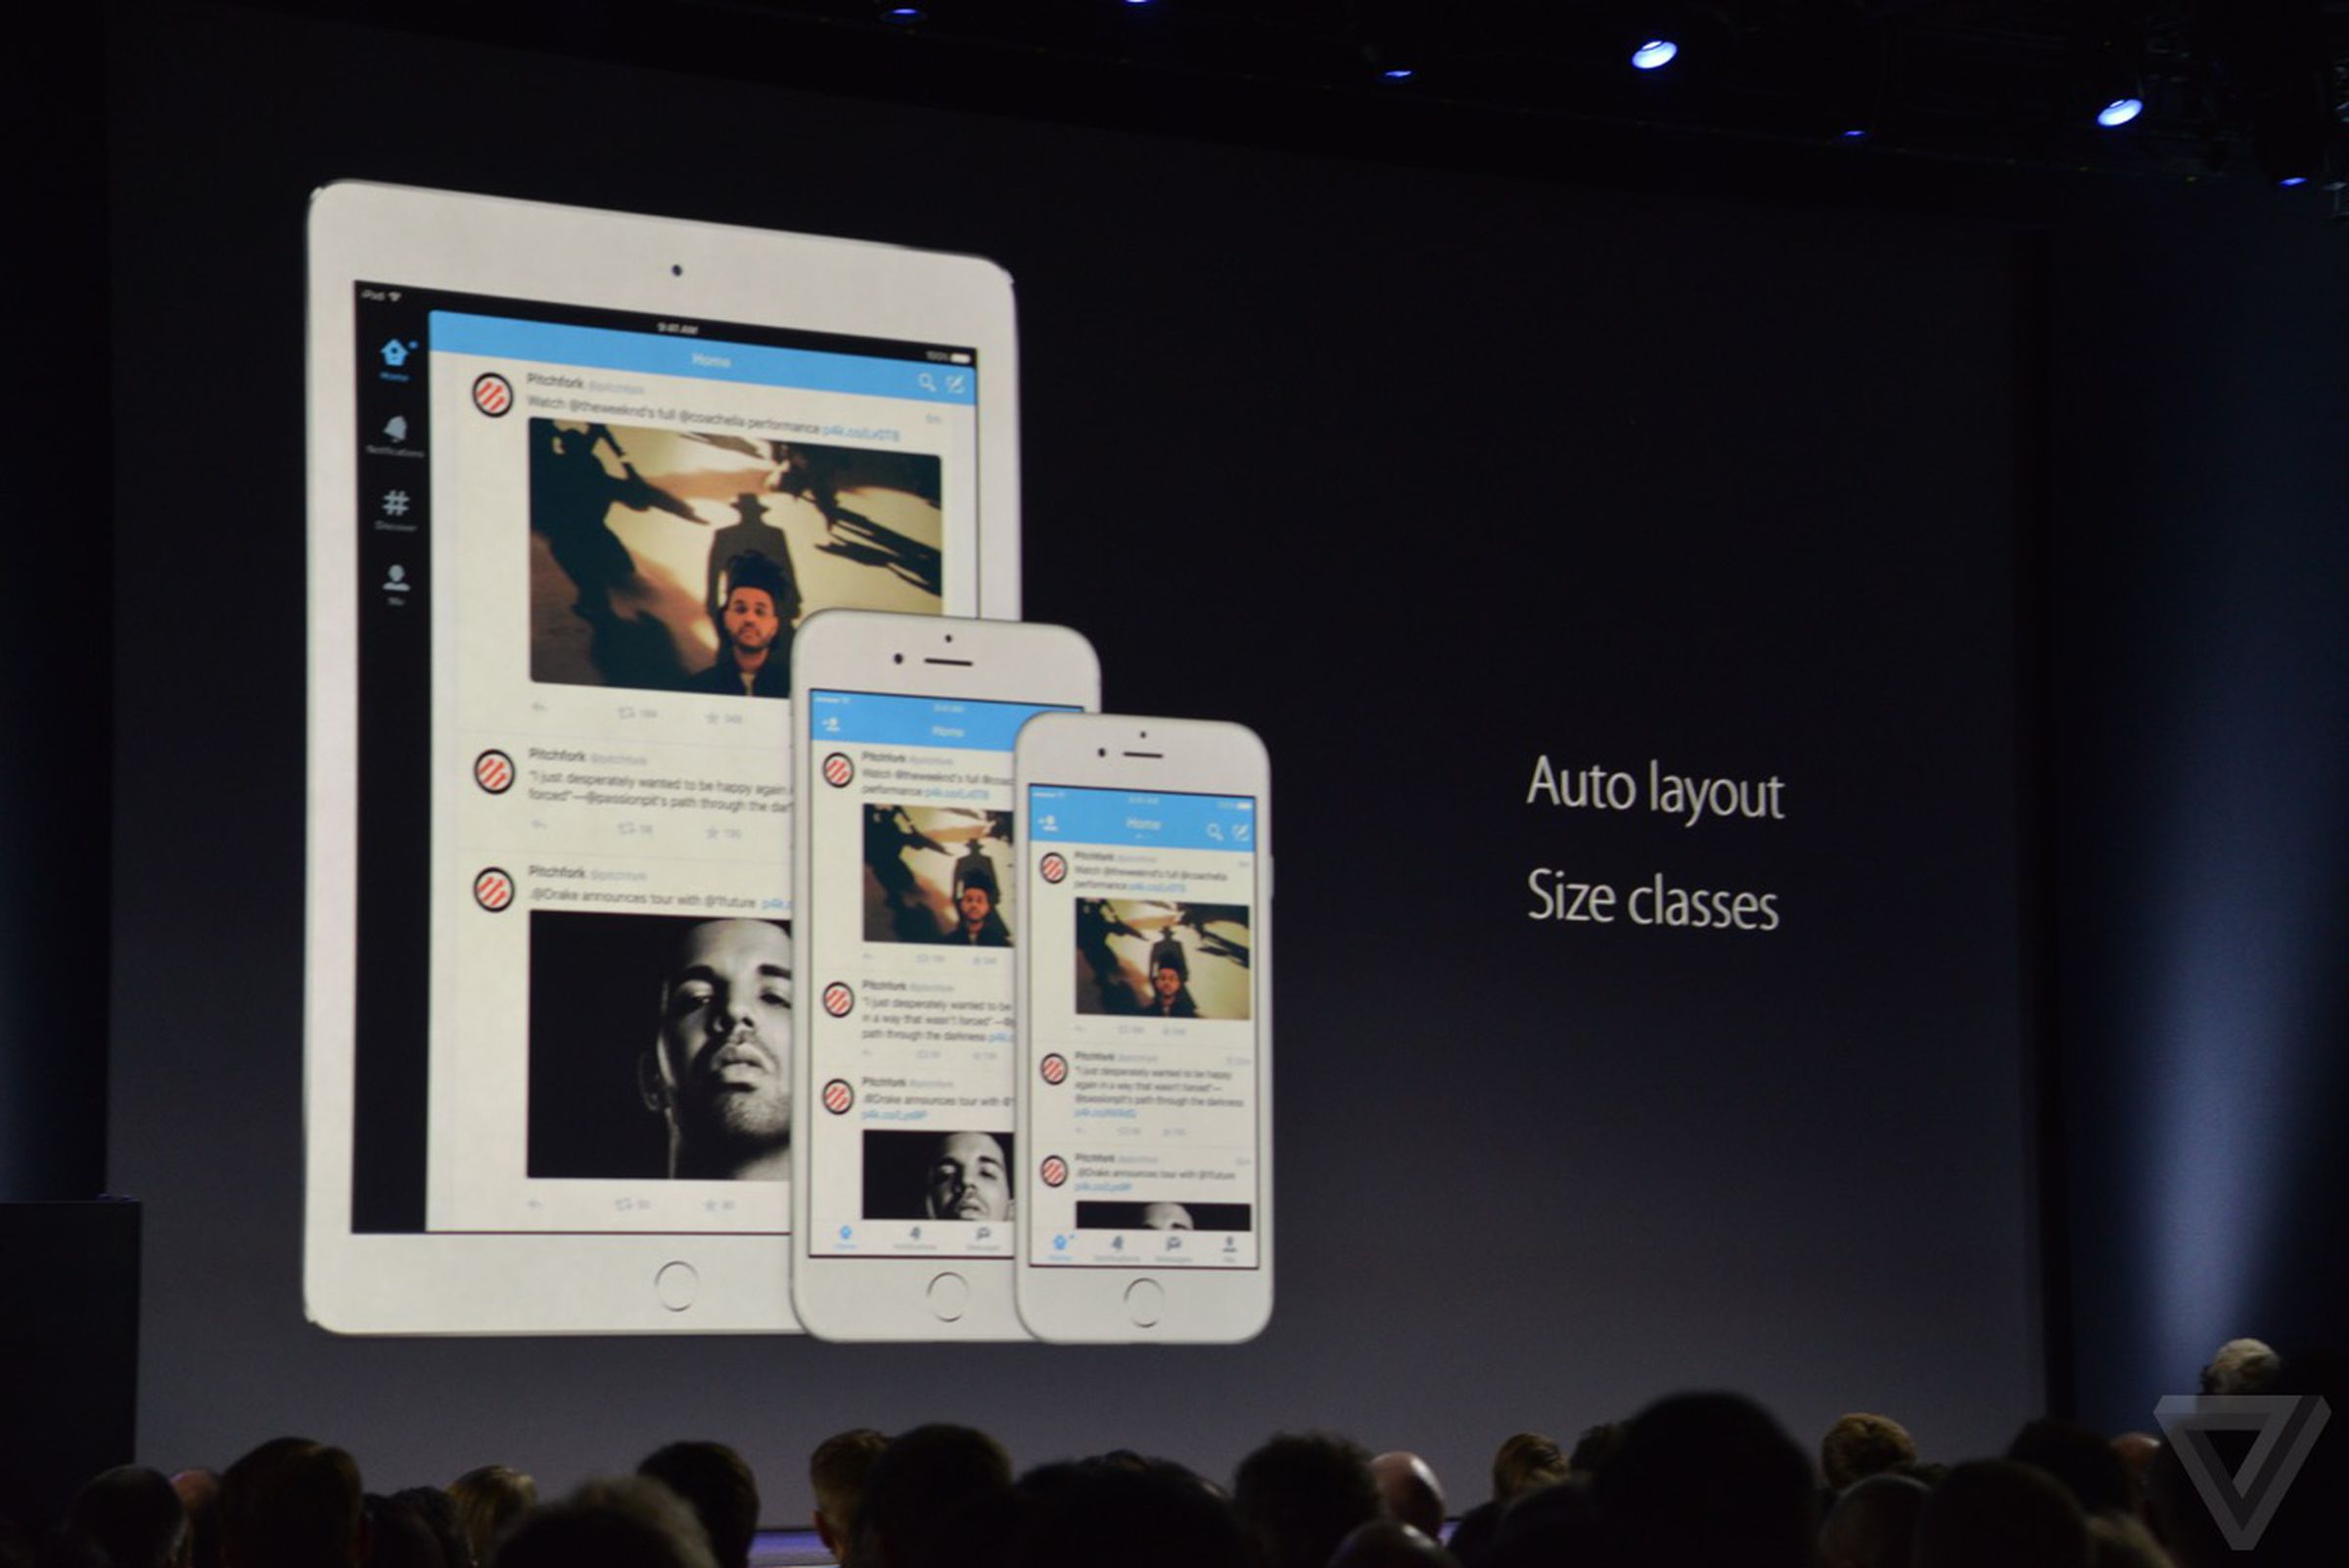 iPad Multitasking in iOS 9 photos